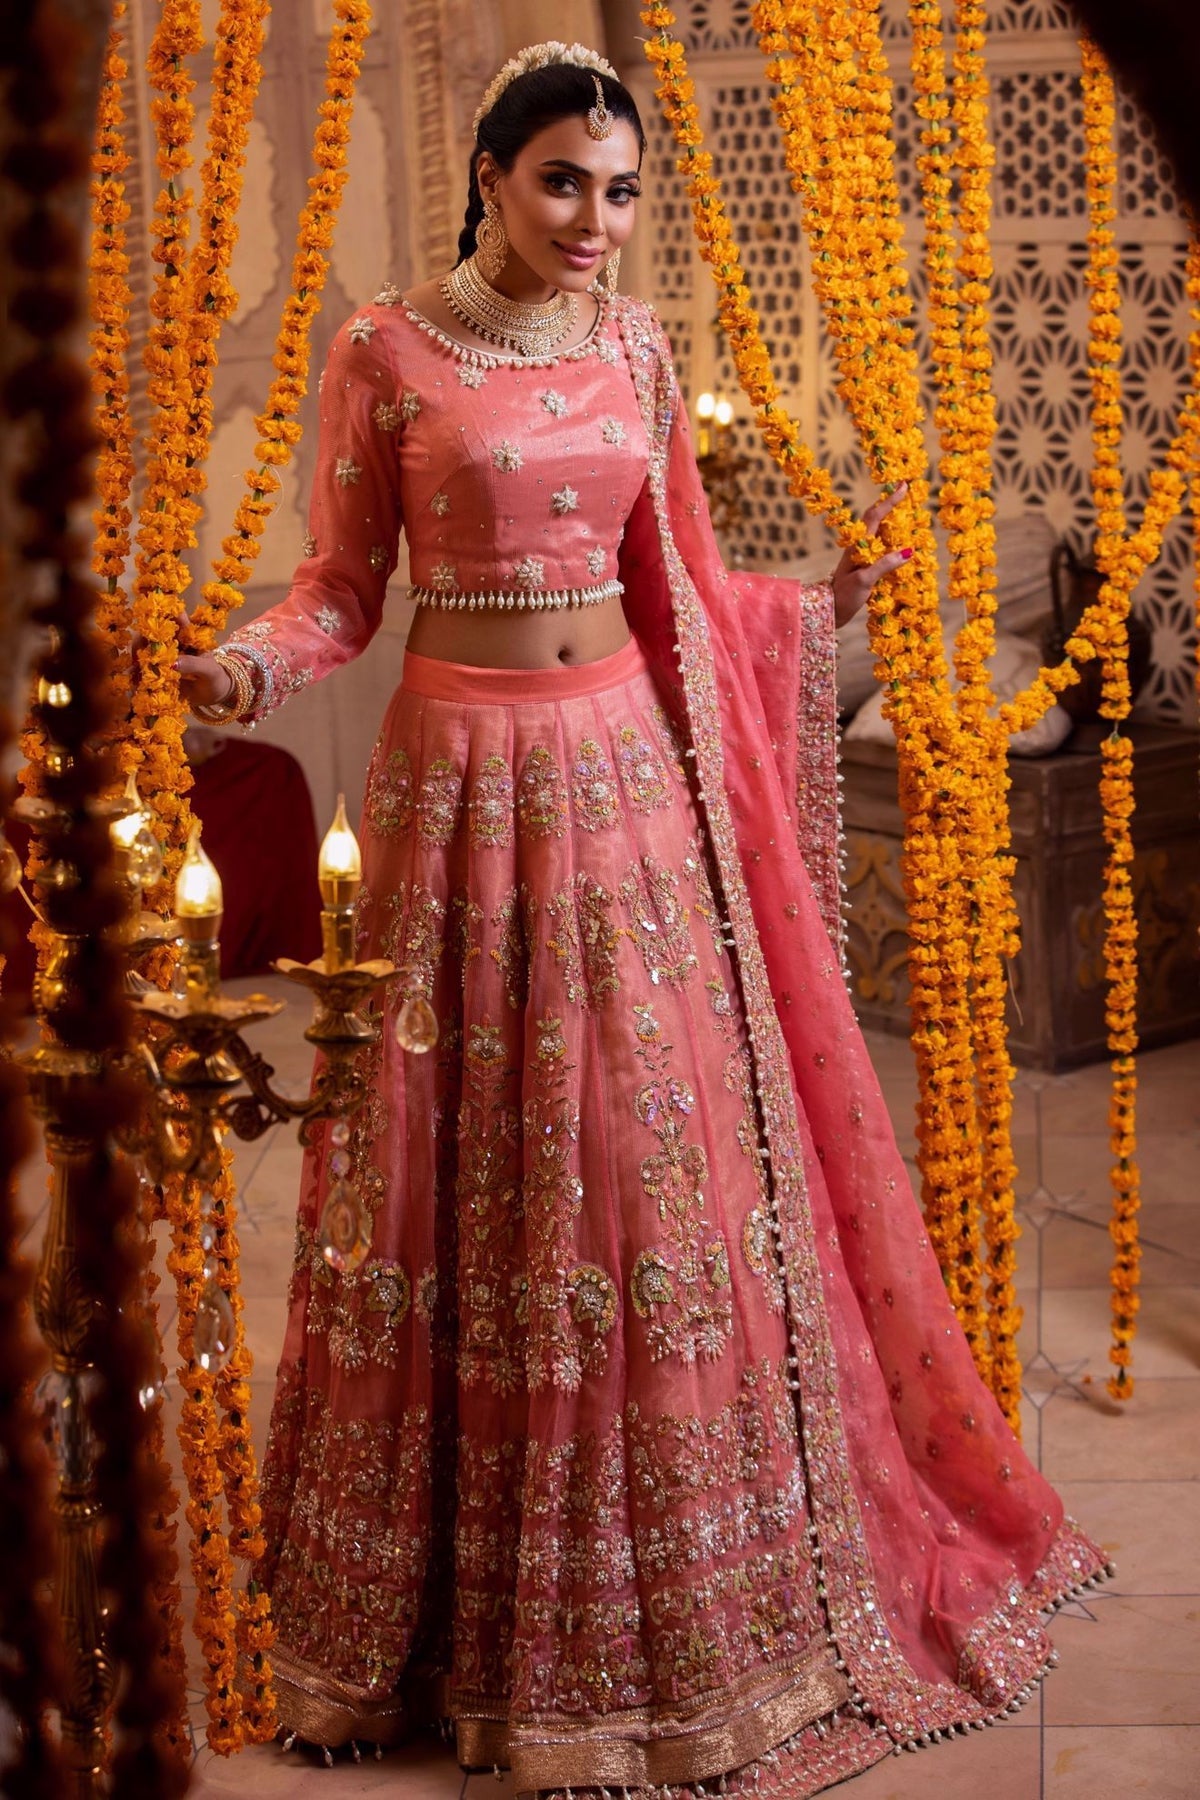 Buy Bridal Lehenga, Bridesmaids Lehenga Choli Online From Suvidha Fashions,  Best Bridal Lehenga Online Shopping Site